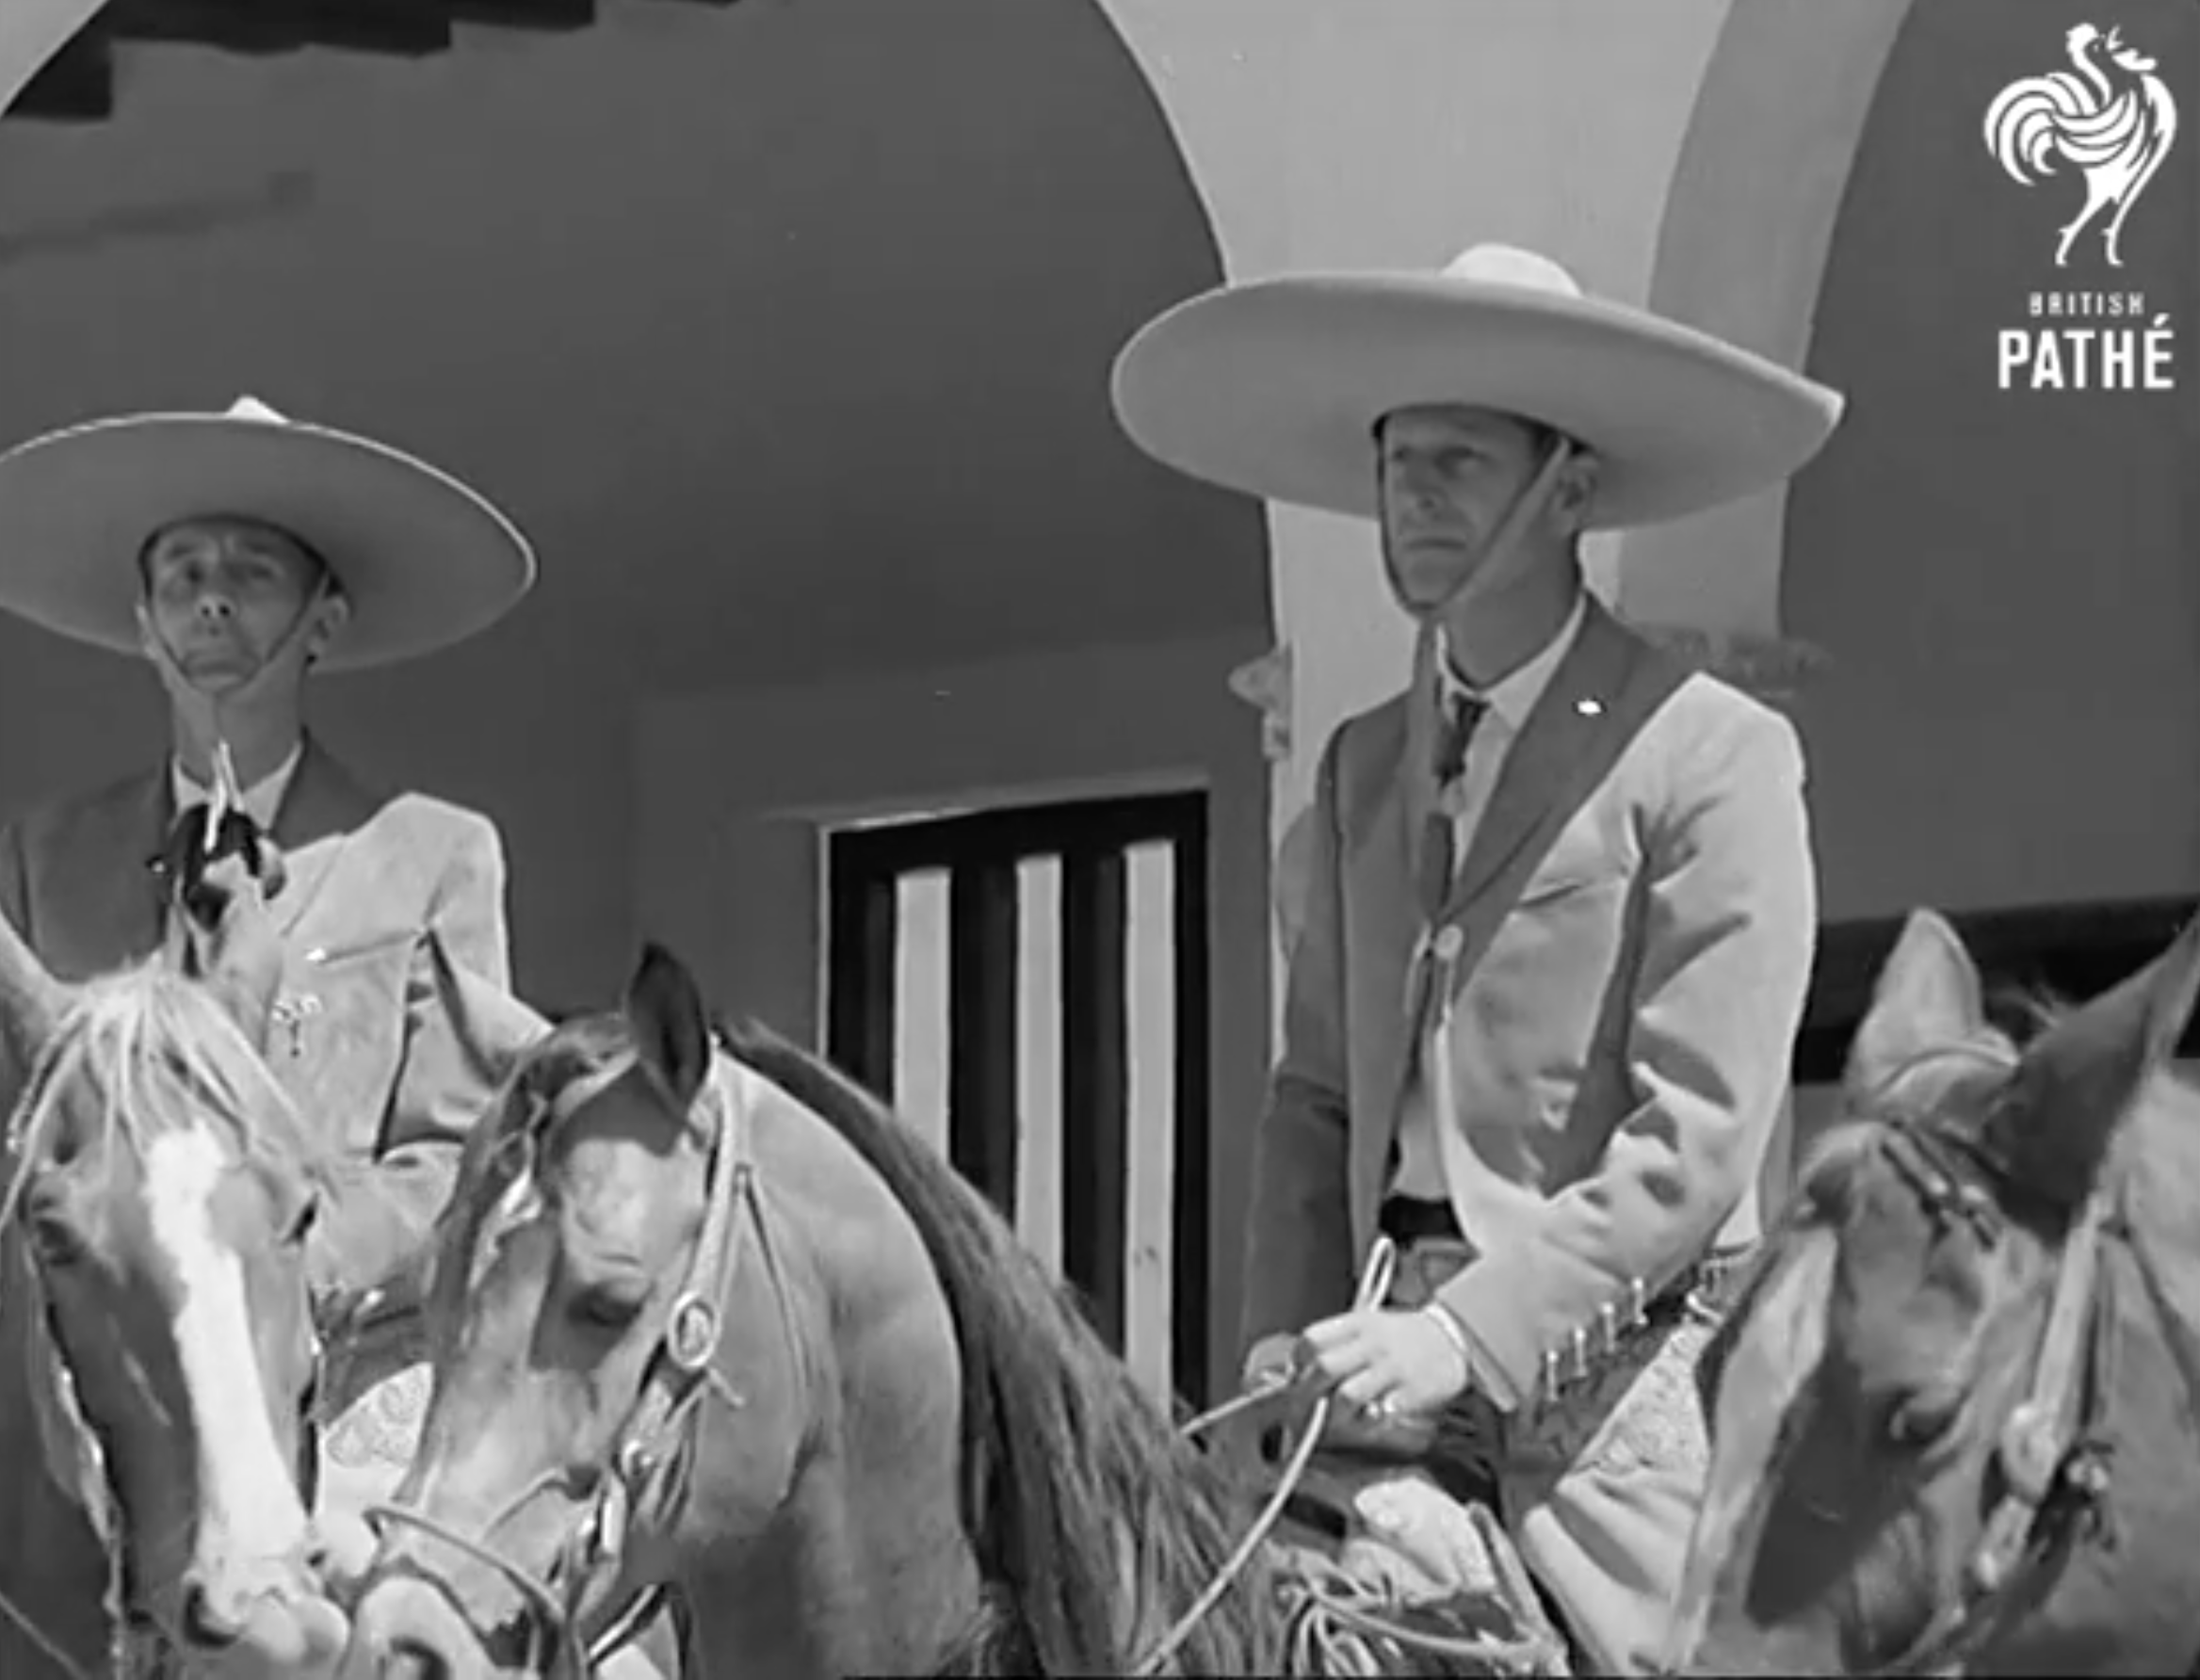 En 1964 el Príncipe Felipe realizó una visita en solitario al país azteca. Ahí disfrutó de una presentación especial de ballet folclórico, participó en un torneo de polo e incluso portó el traje de charro.